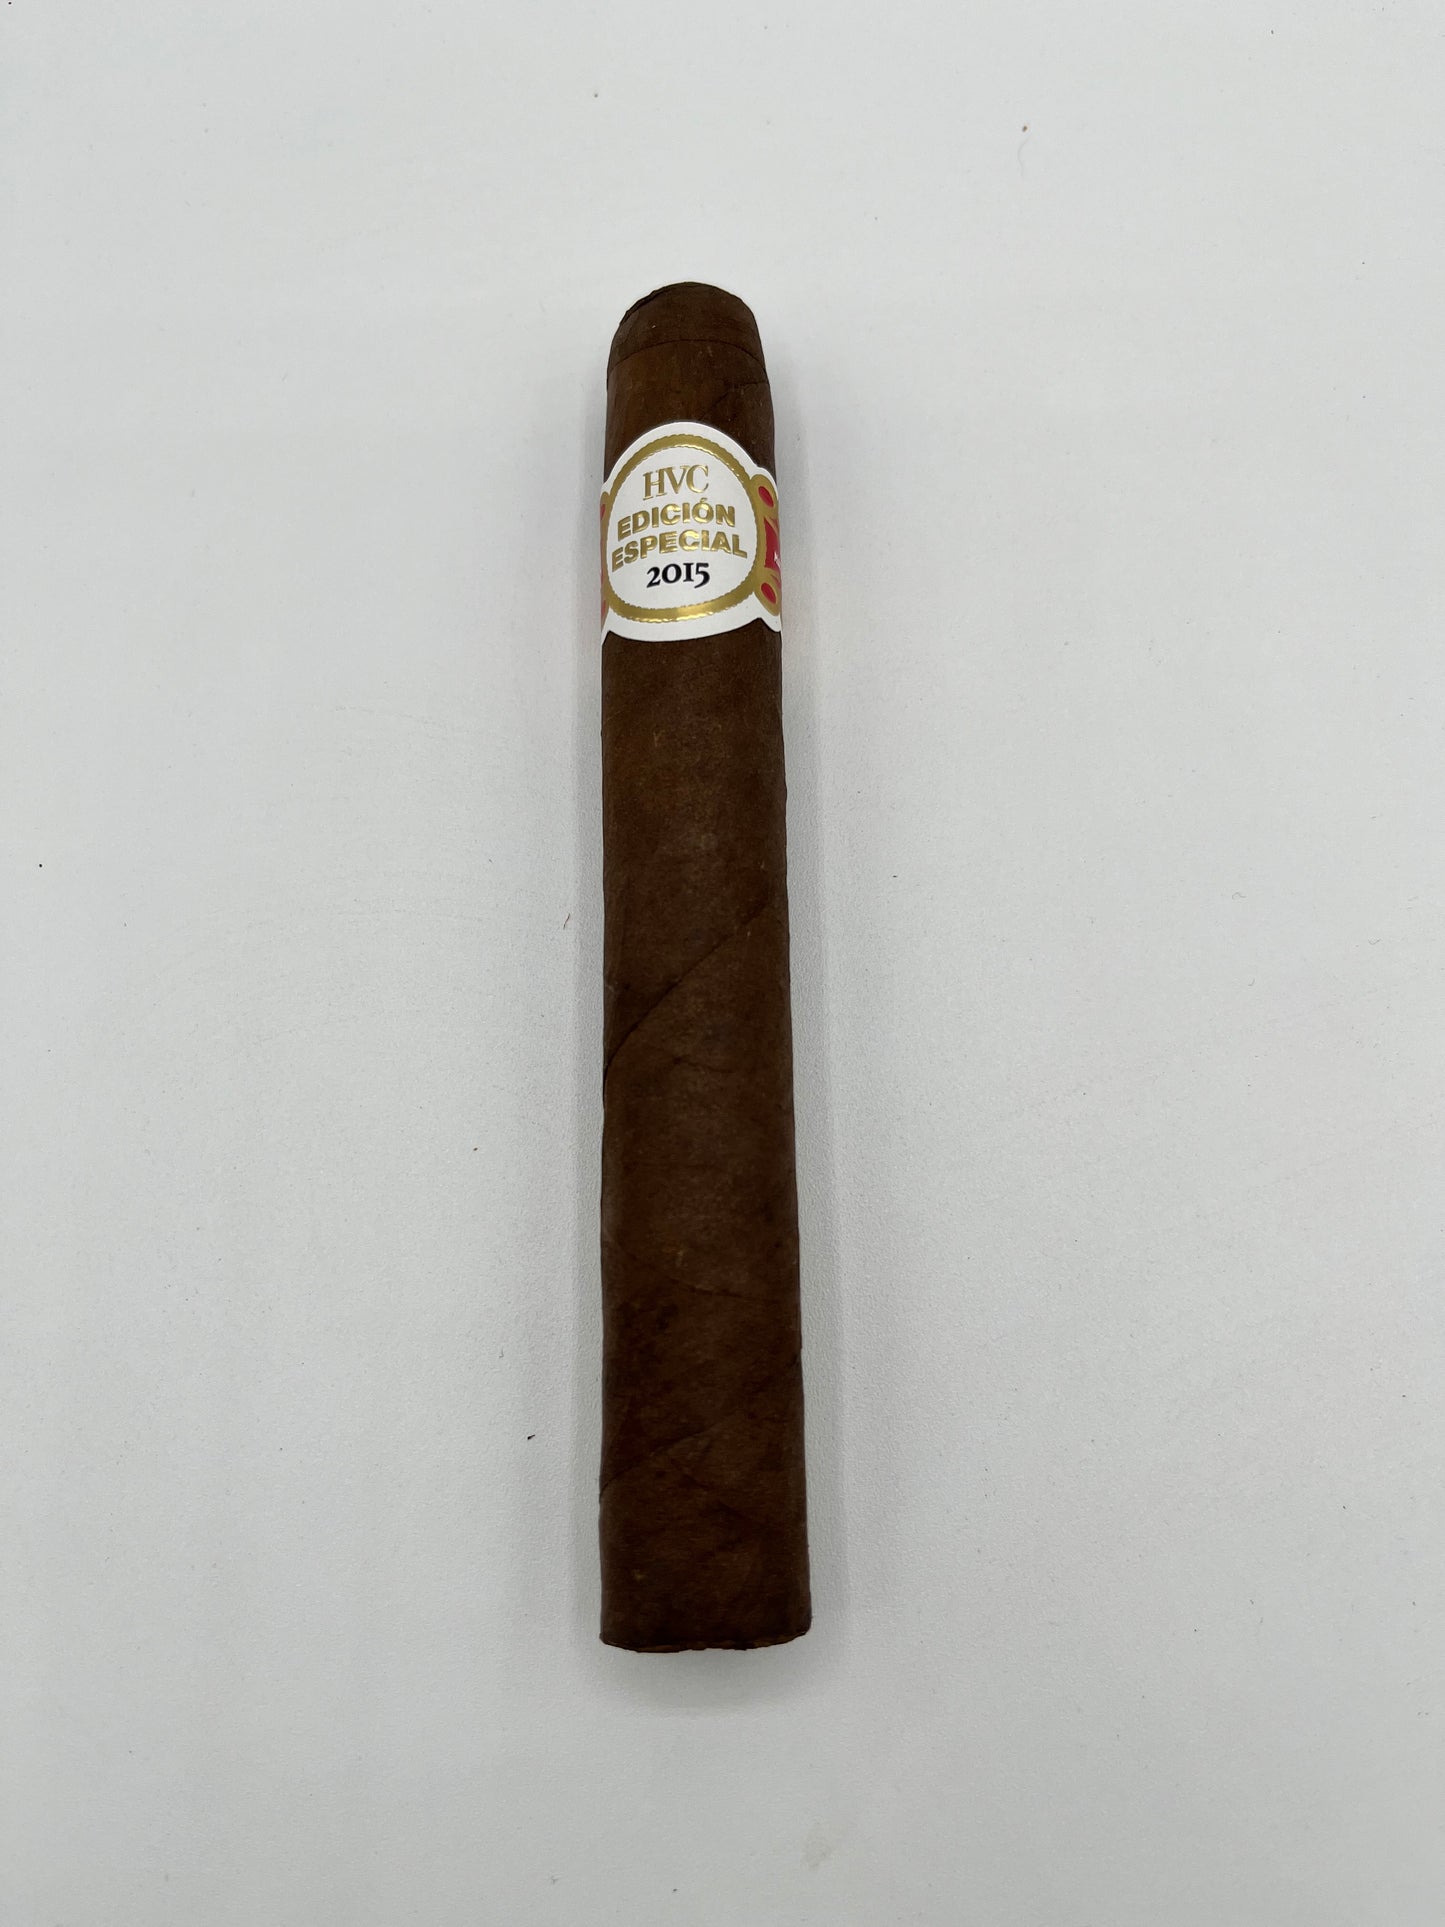 Edicion Especial 2015 by Havana Cigars